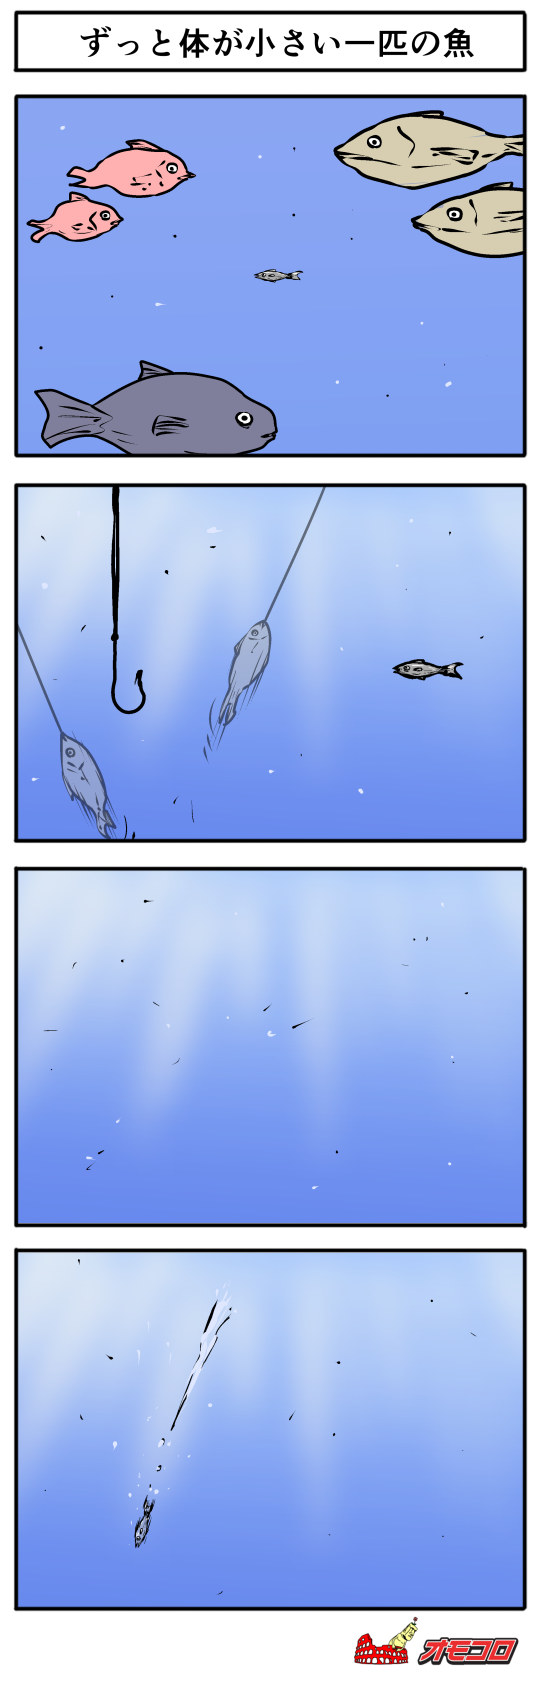 4コマ漫画 ずっと体が小さい一匹の魚 オモコロ